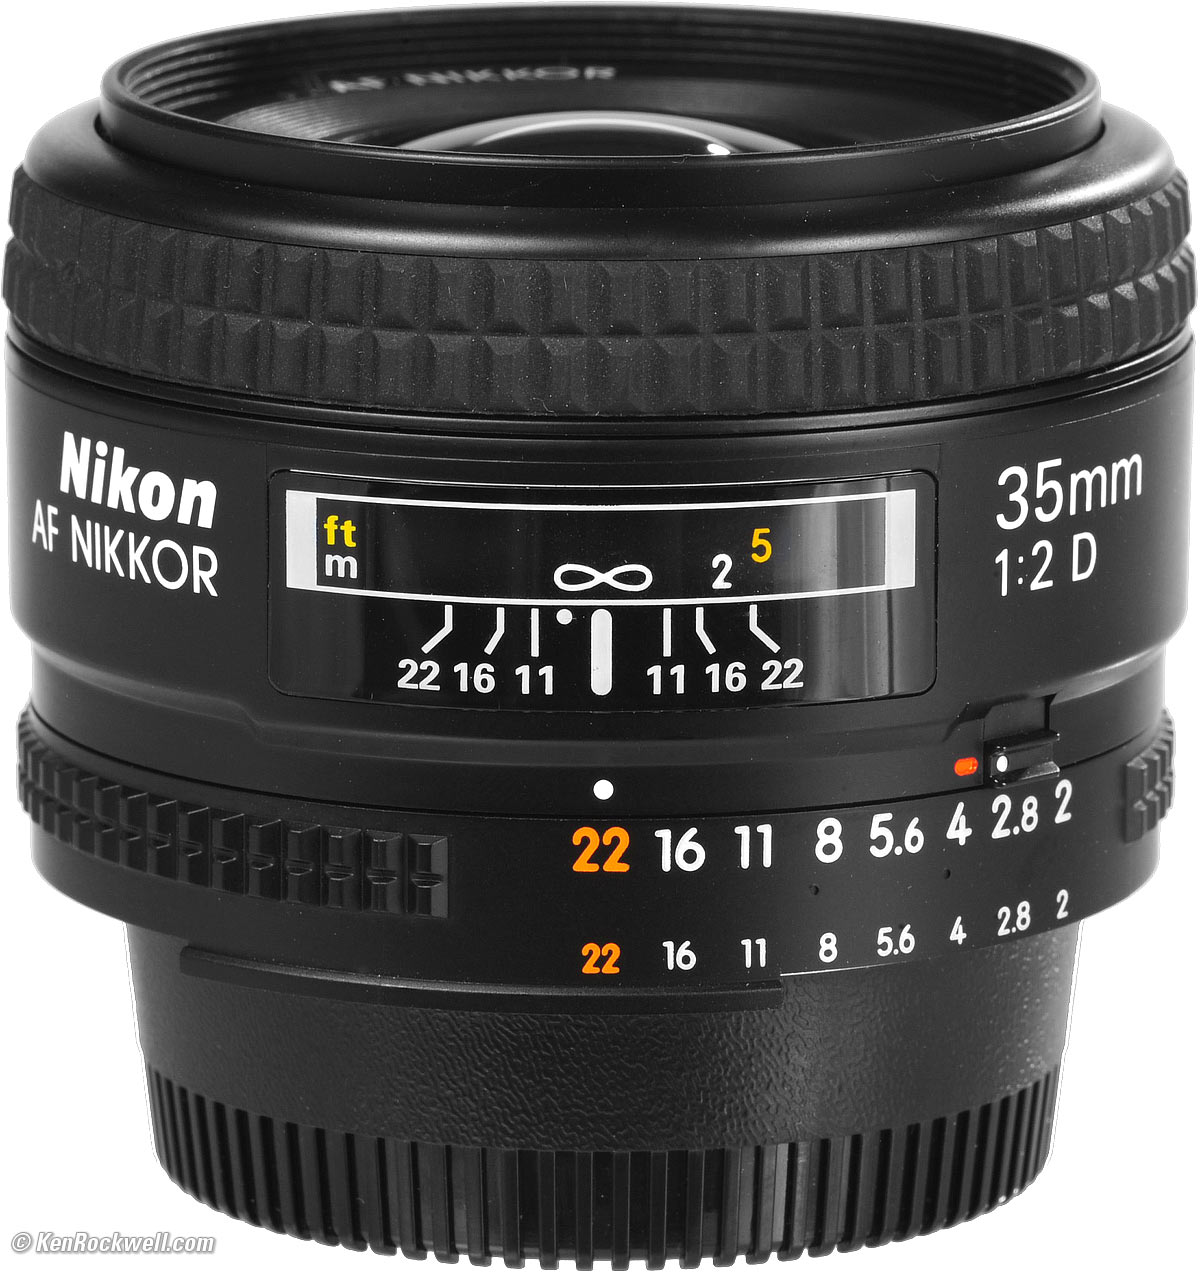 Nikon 35mm F 2 Af D Review